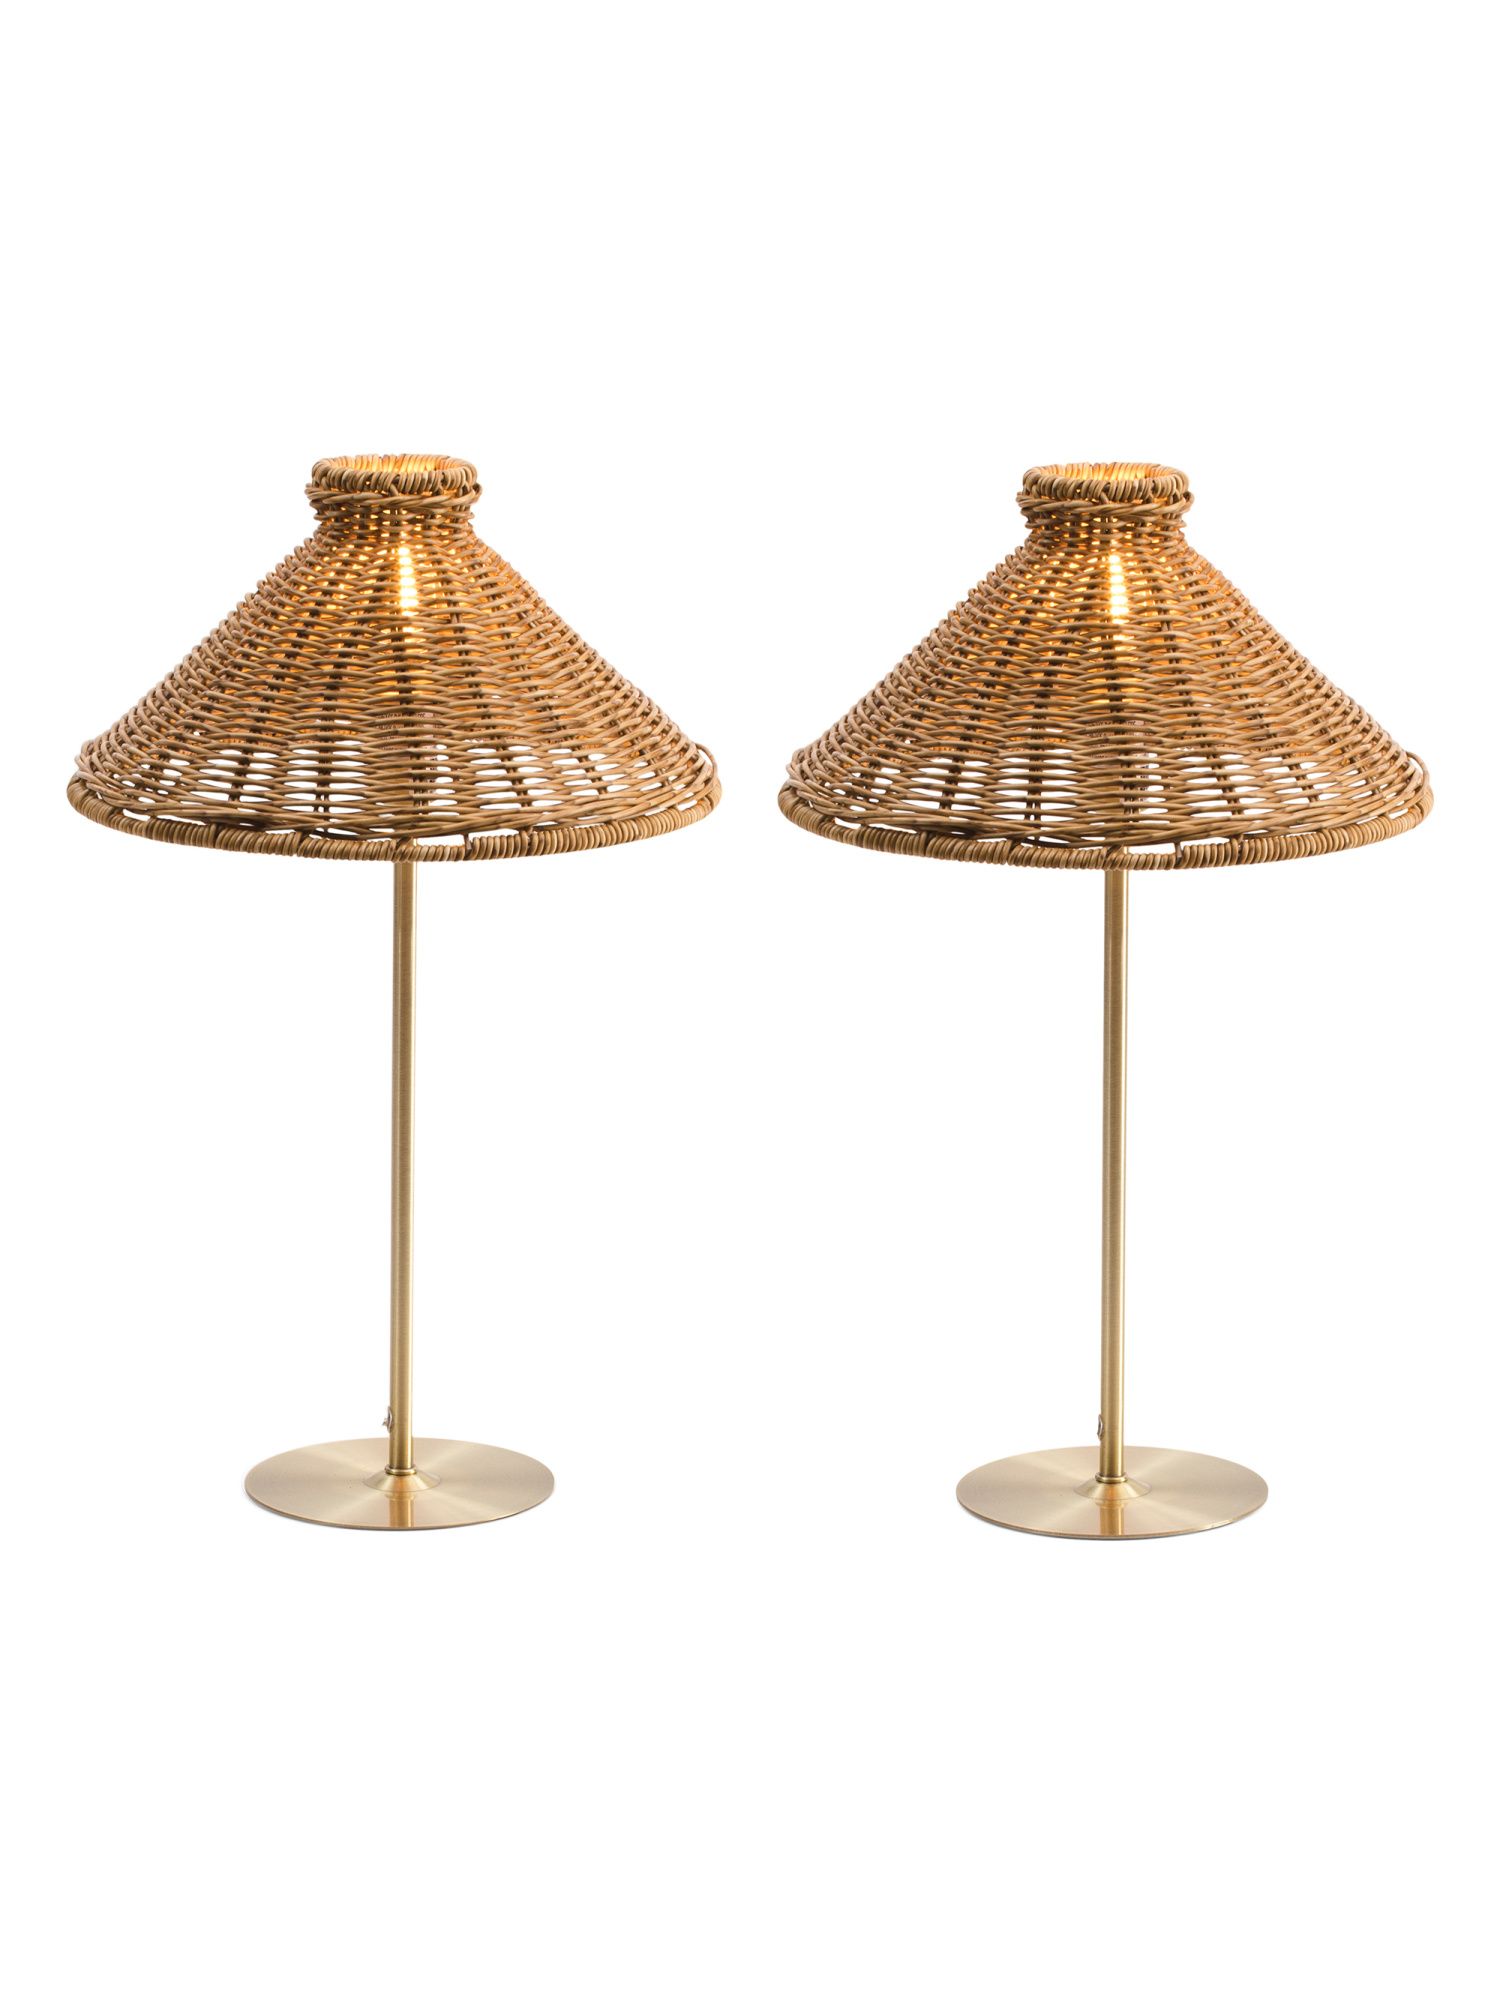 Wicker Cone Shamped Table Lamp | TJ Maxx